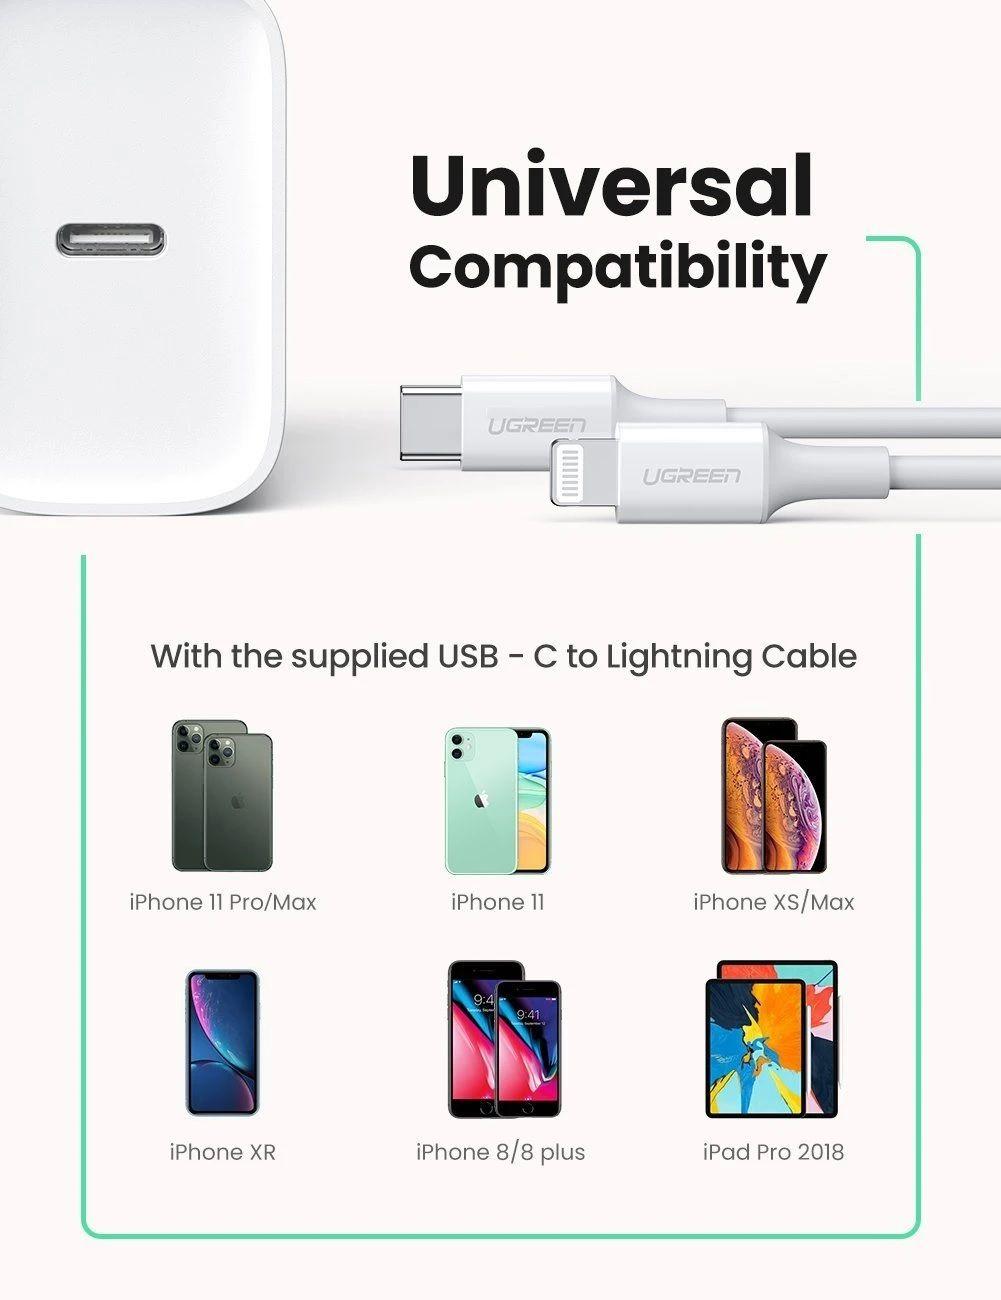 Ugreen UG70293CD137TK 18W bộ kit sạc nhanh PD và cáp USB type C ra Lightning MFI cho iPhone màu trắng - HÀNG CHÍNH HÃNG